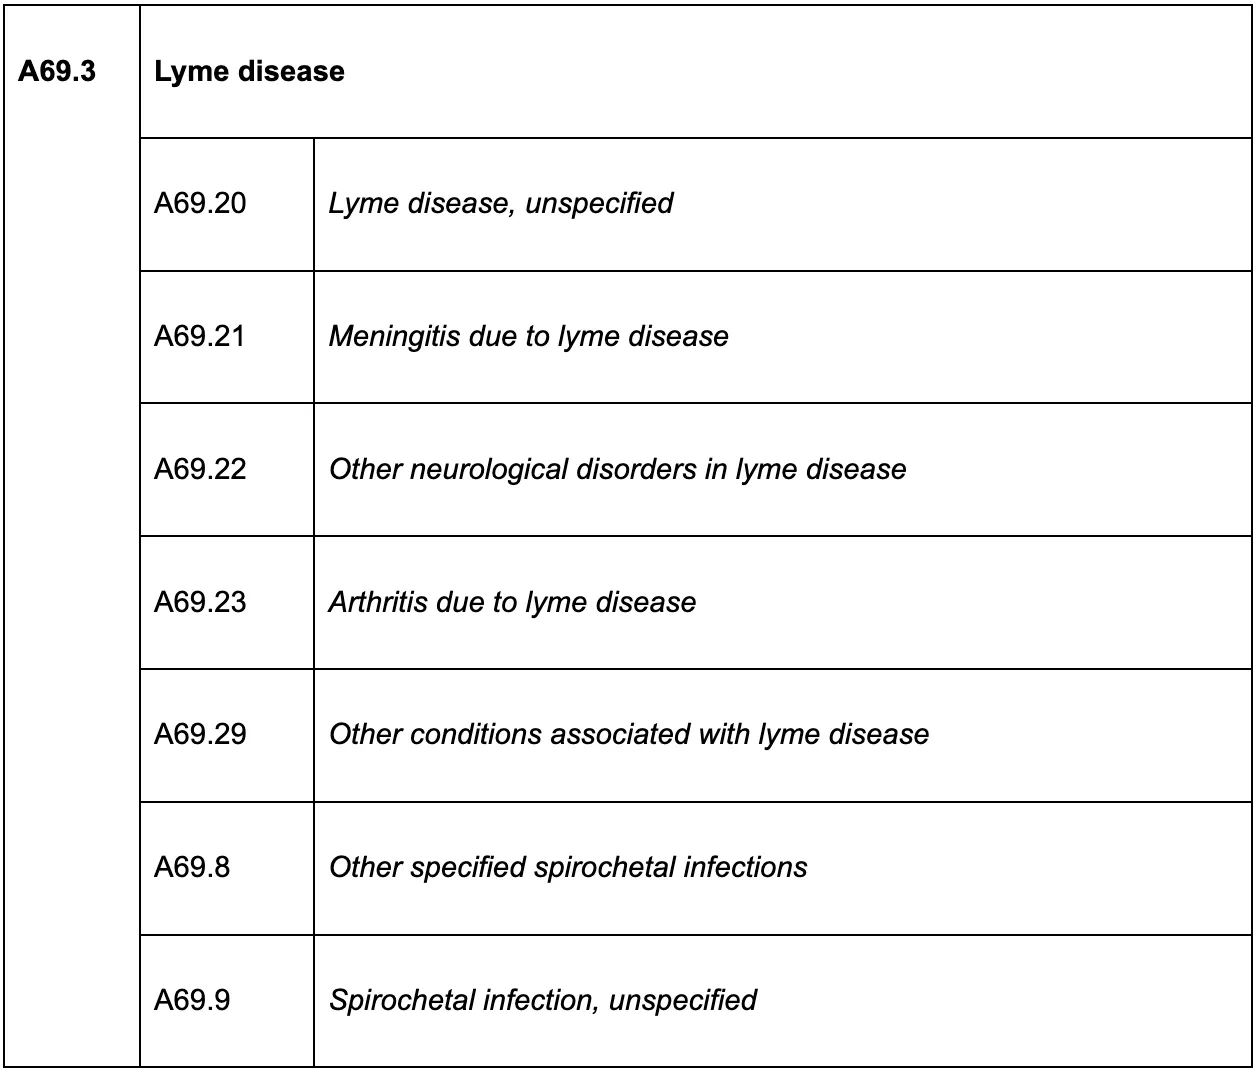 lyme disease ICD code